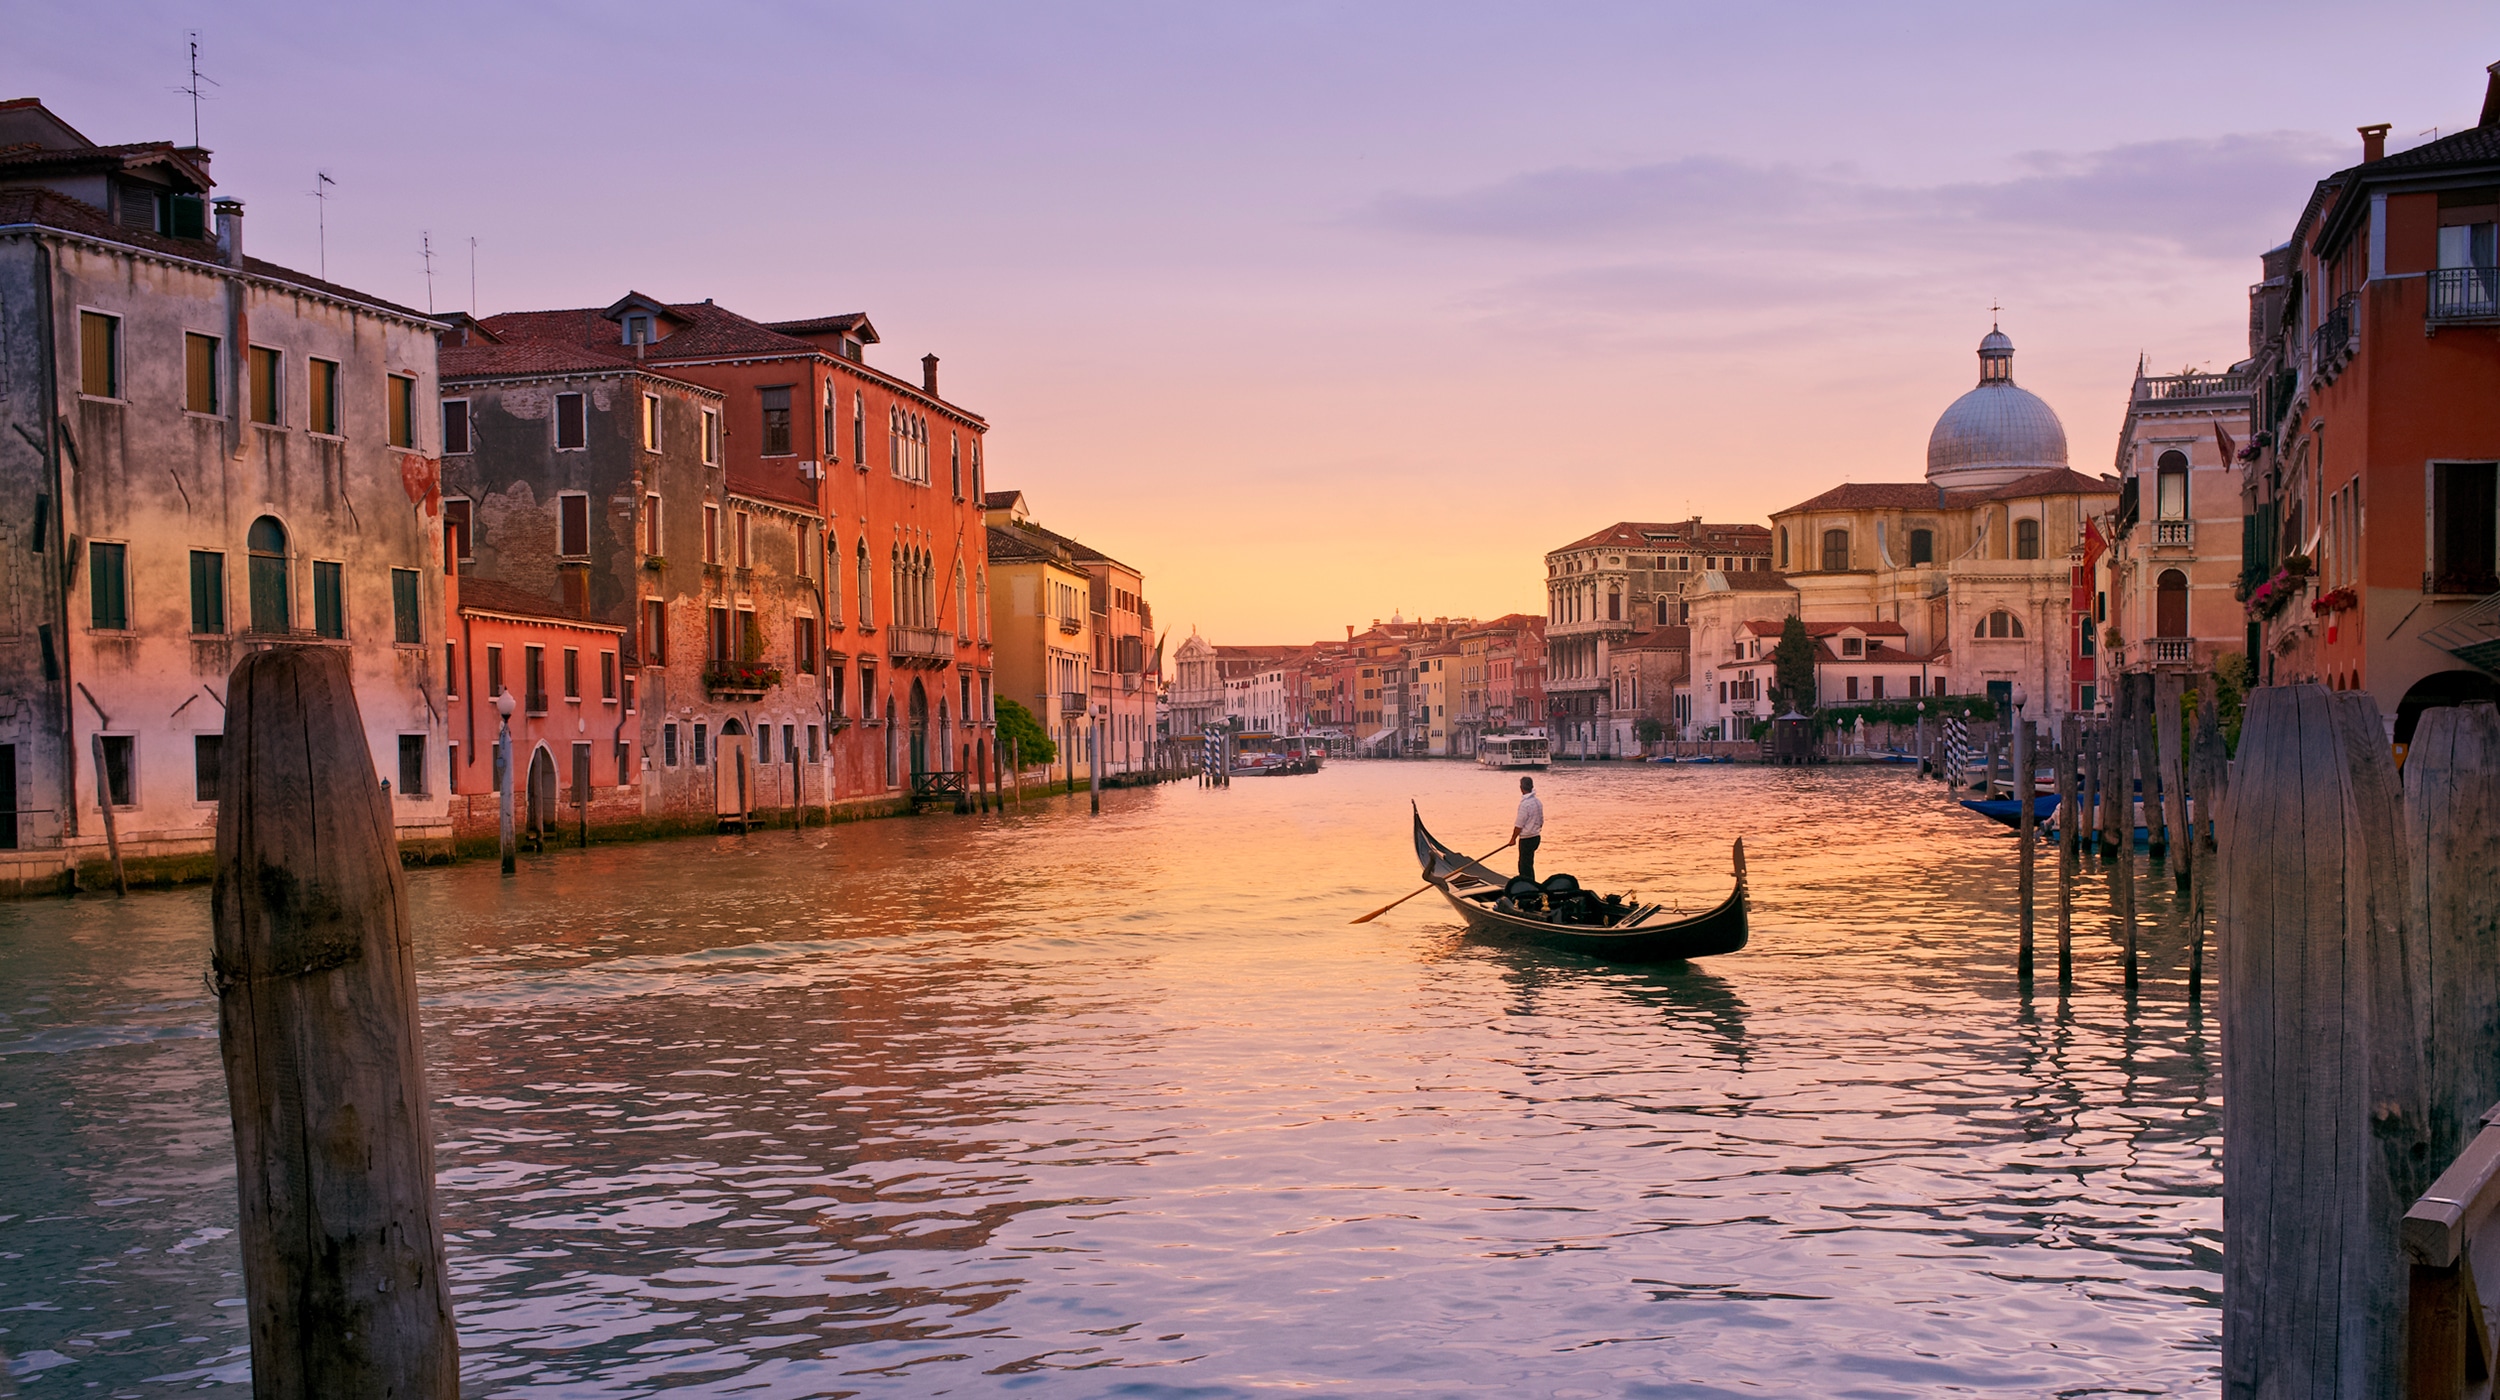 Venice. Image: Getty